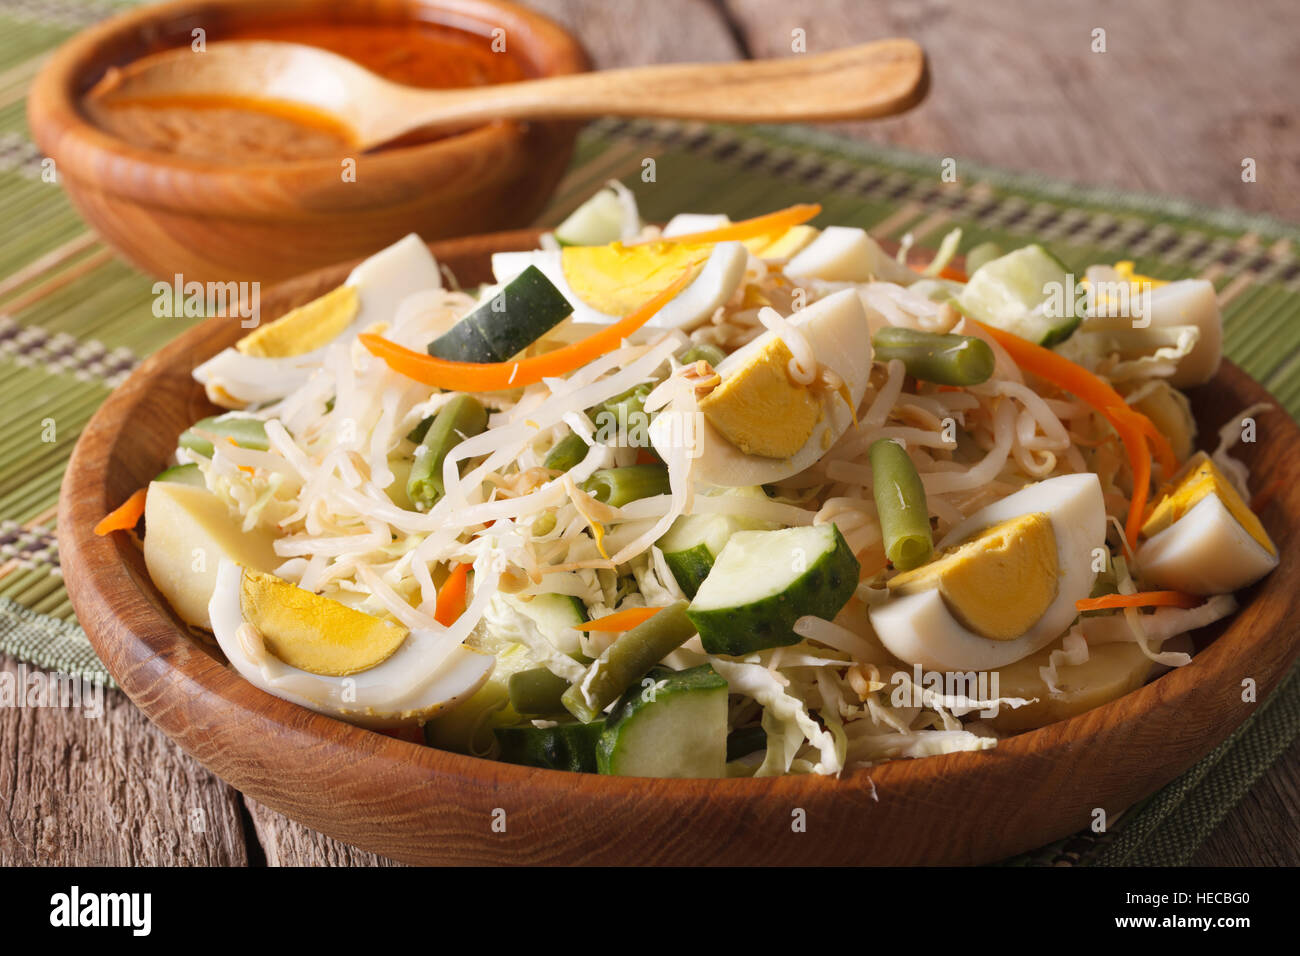 Indonesischer Salat Gado Gado mit Erdnuss-Sauce Nahaufnahme auf einer Platte. Horizontale Stockfoto